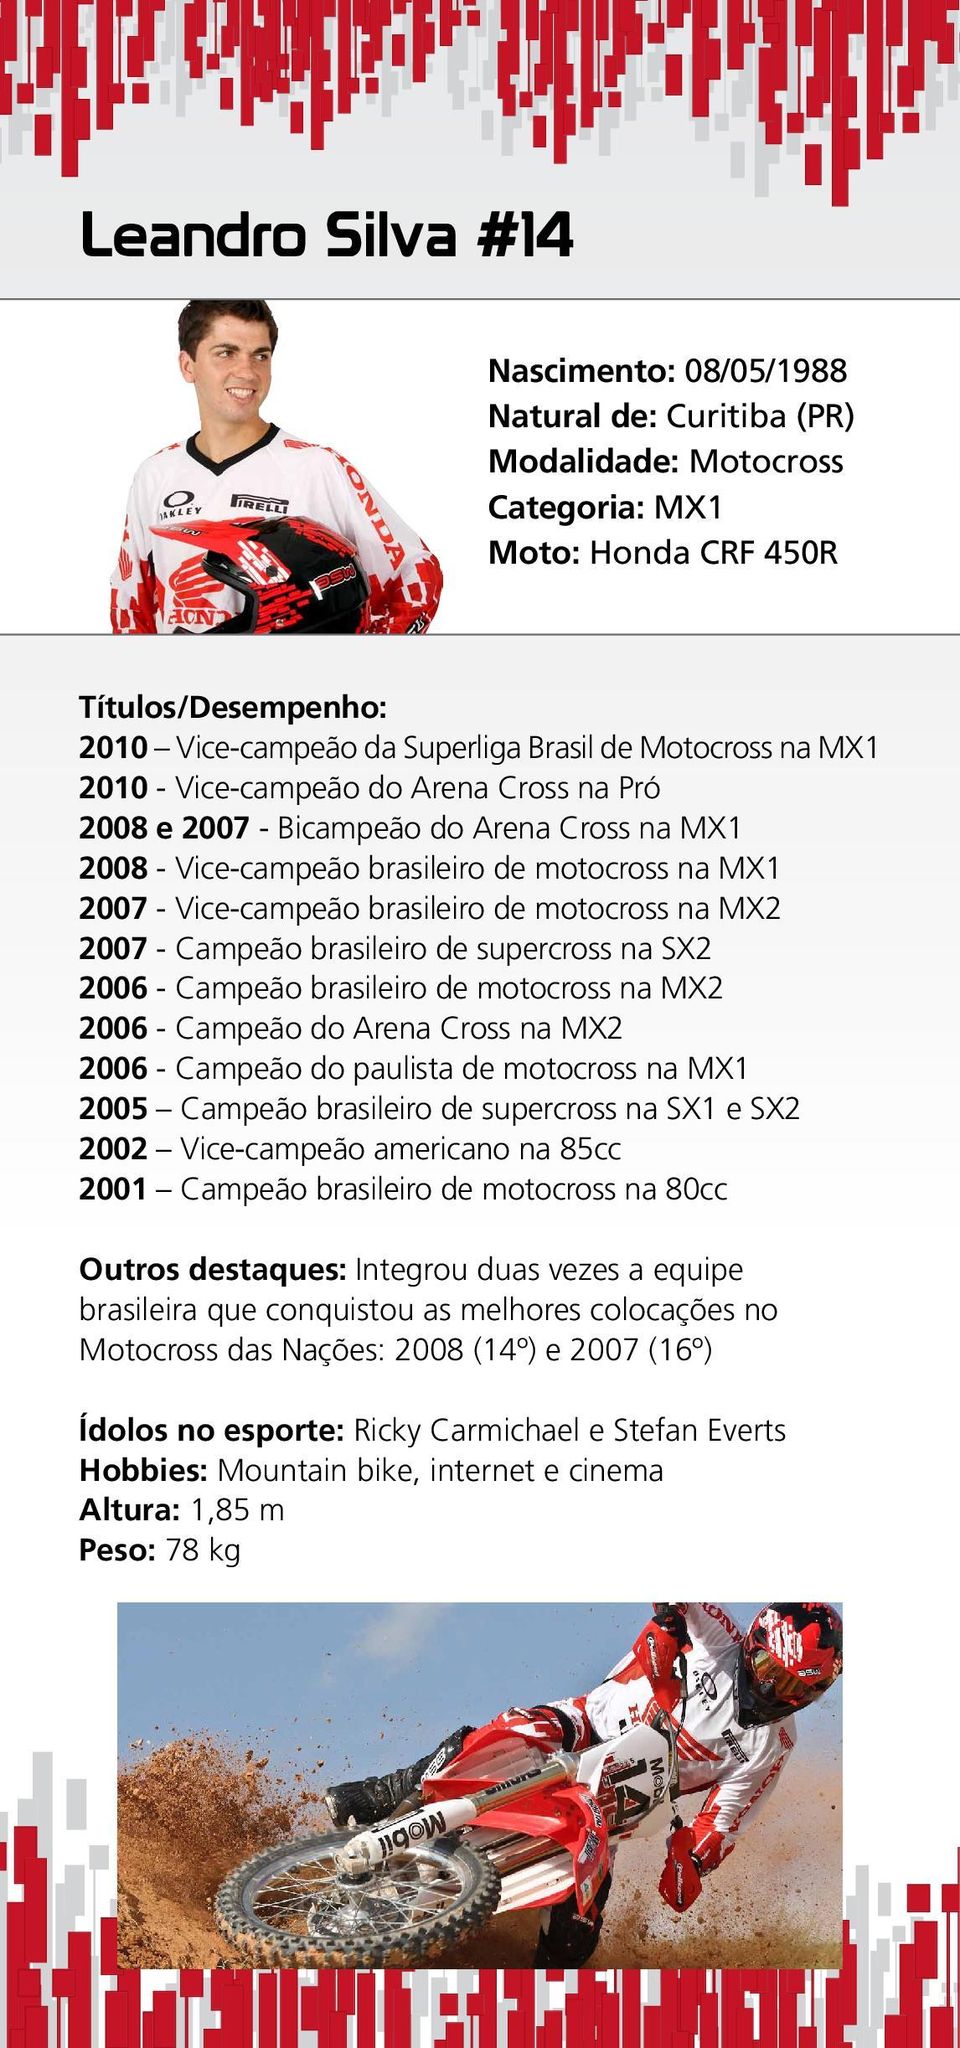 - Campeão brasileiro de supercross na SX2 2006 - Campeão brasileiro de motocross na MX2 2006 - Campeão do Arena Cross na MX2 2006 - Campeão do paulista de motocross na MX1 2005 Campeão brasileiro de